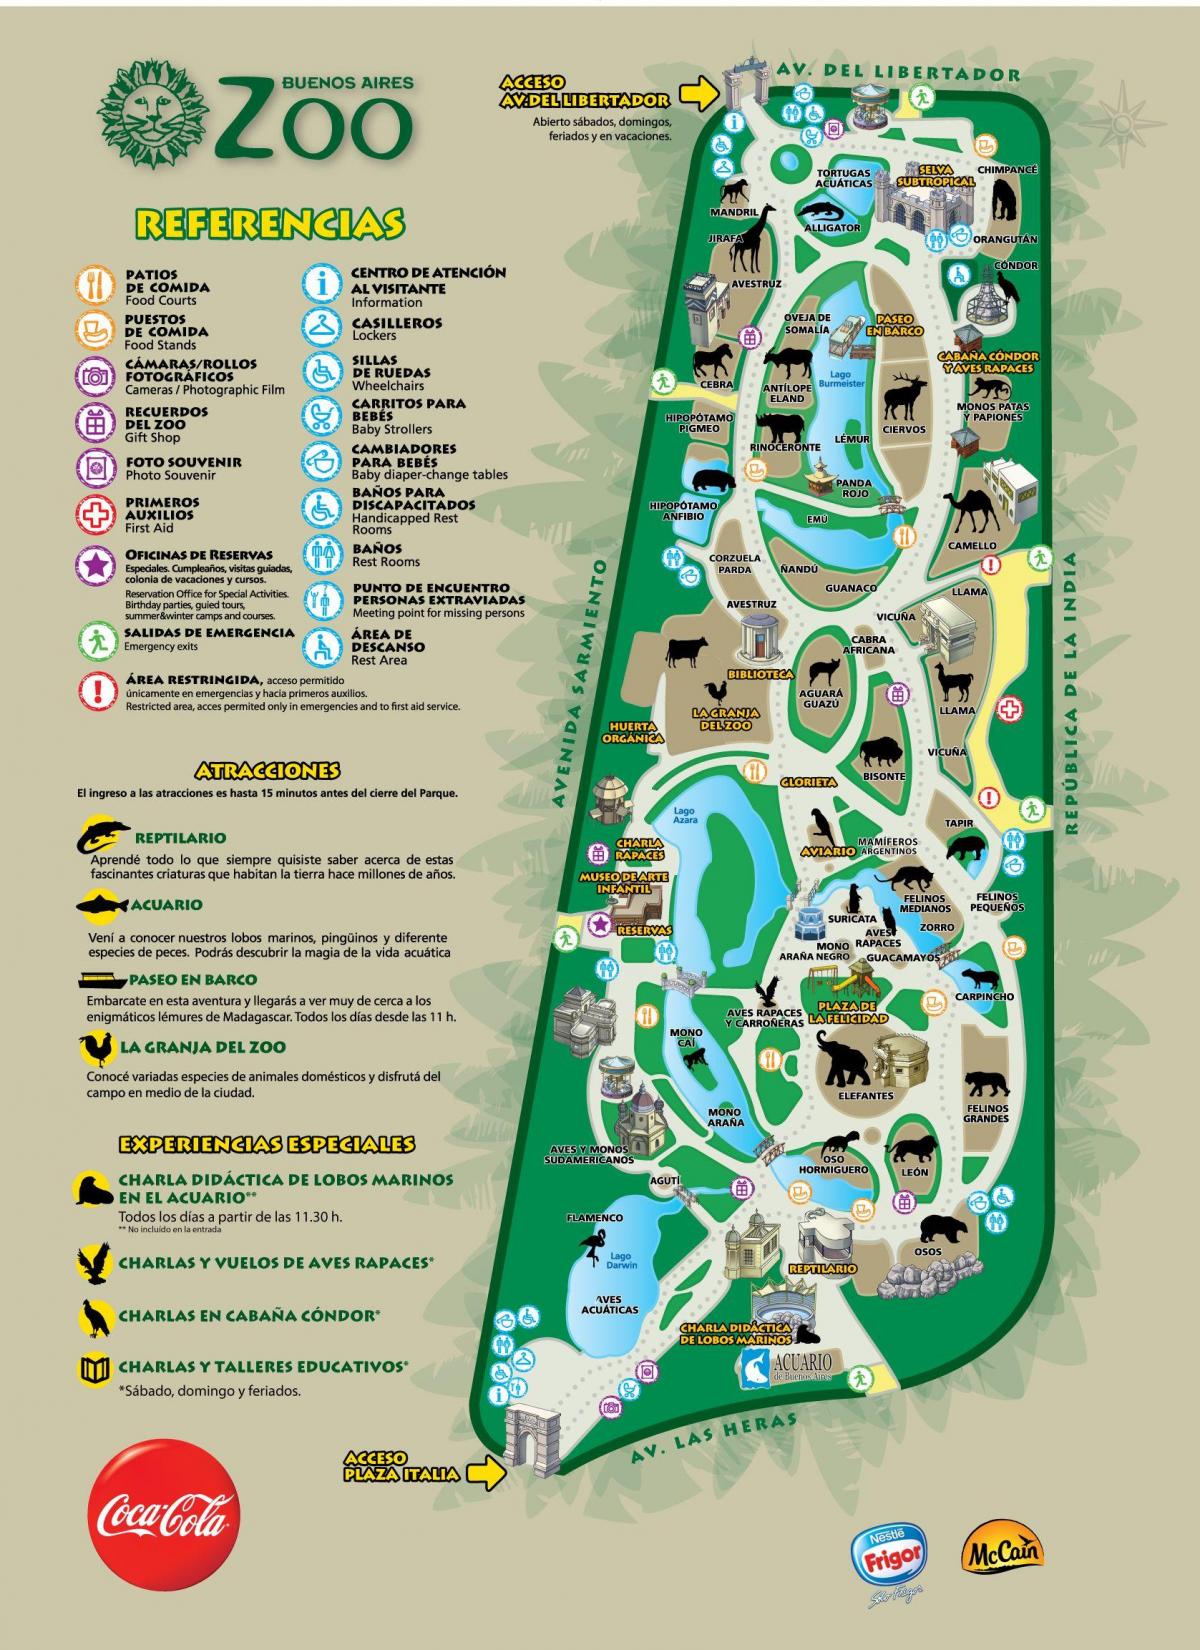 خريطة حديقة بوينس آيرس